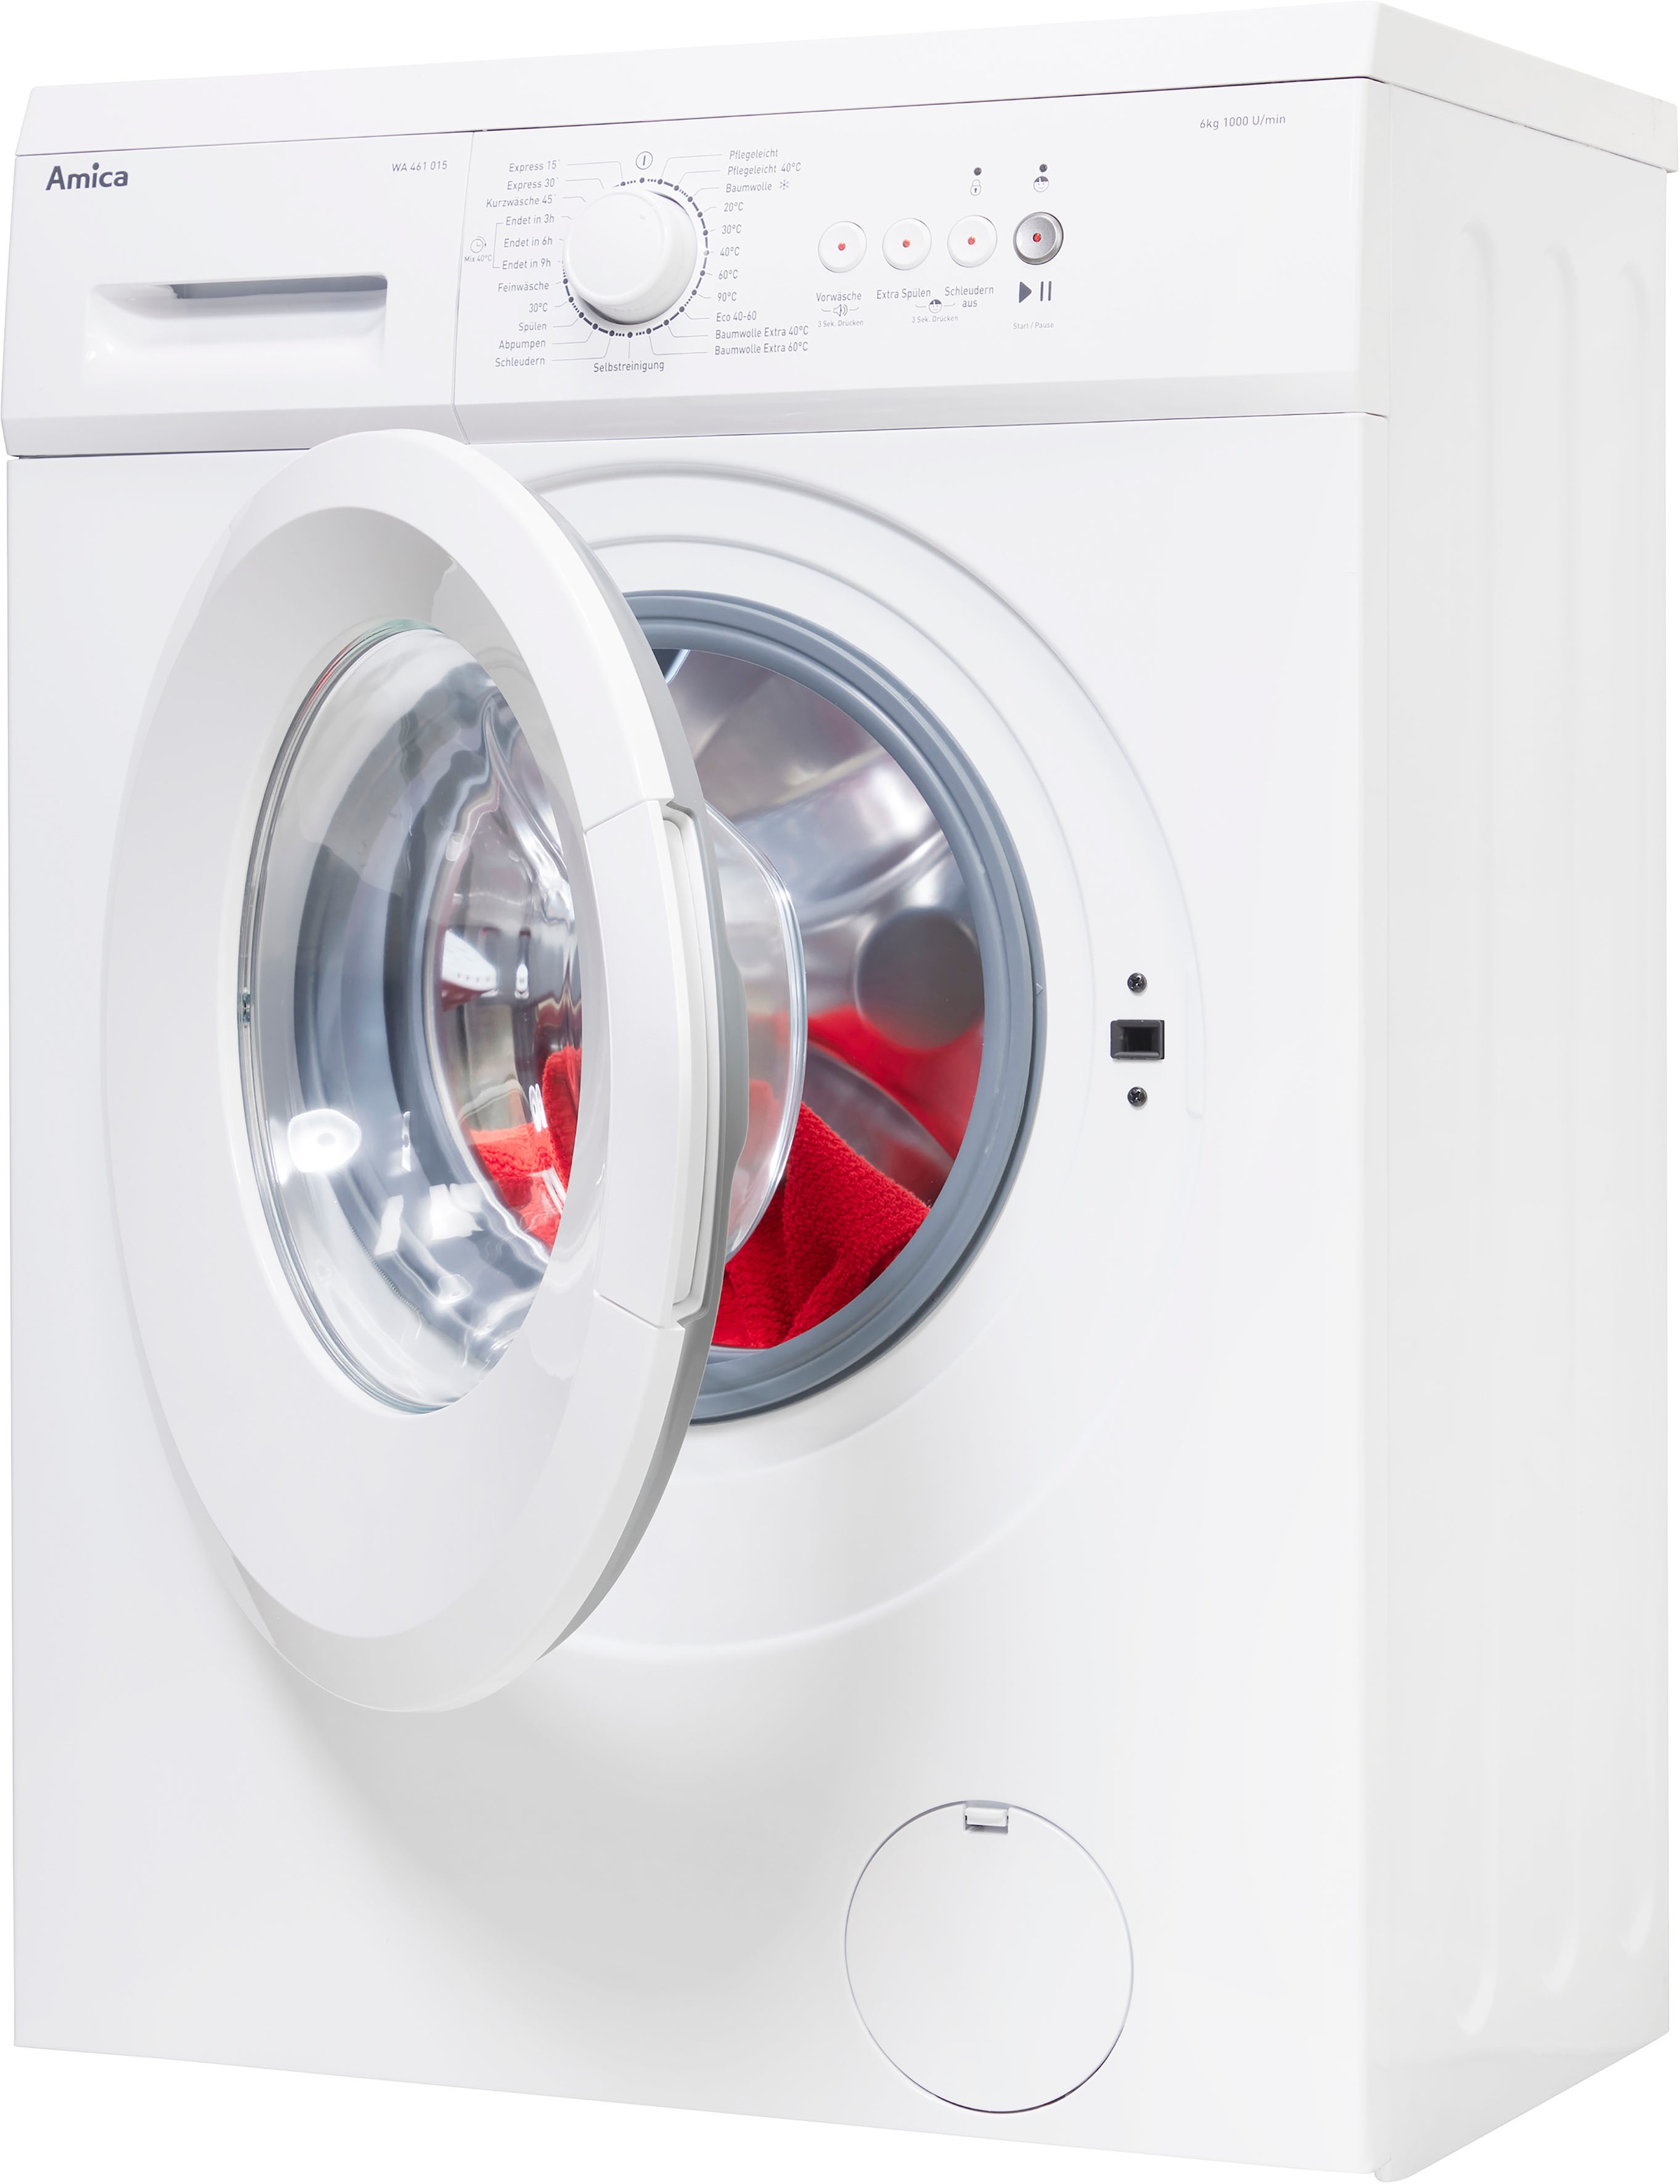 WA Waschmaschine 015 461 XXL W, 461 3 Garantie kg, mit Amica 1000 015«, »WA 6 Jahren U/min